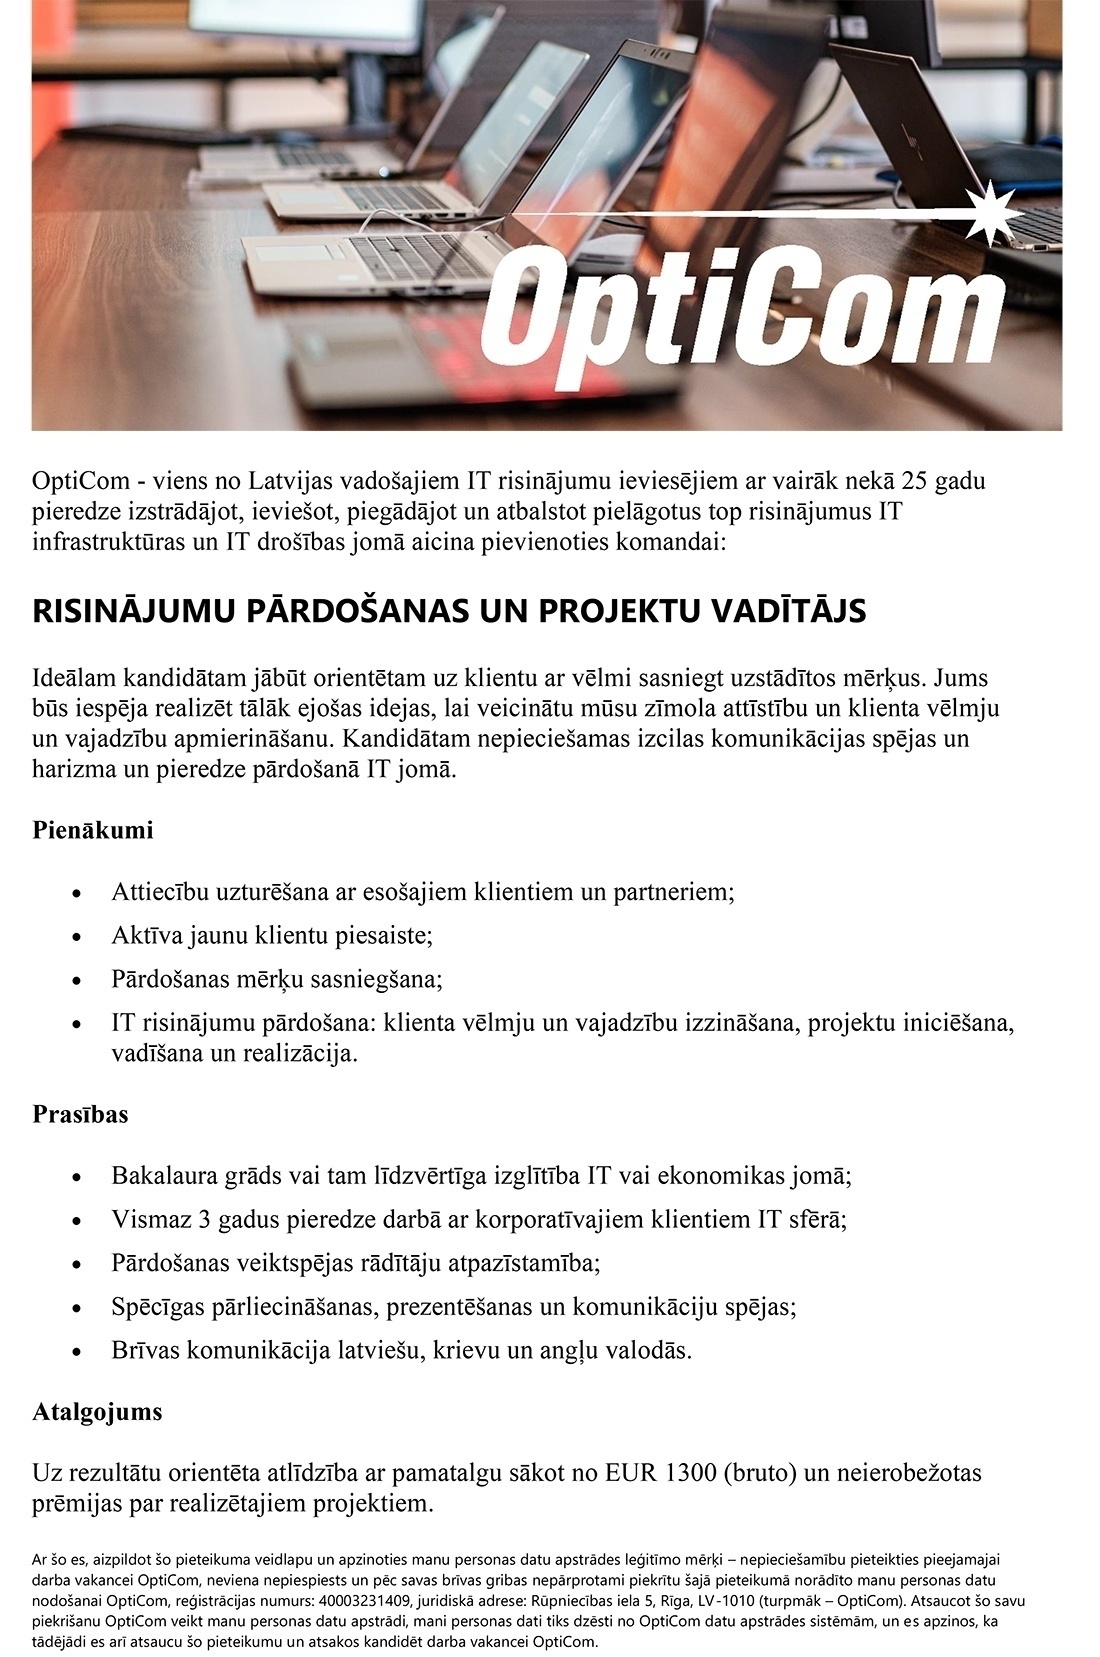 OptiCom, SIA Risinājumu pārdošanas un projektu vadītājs/-a